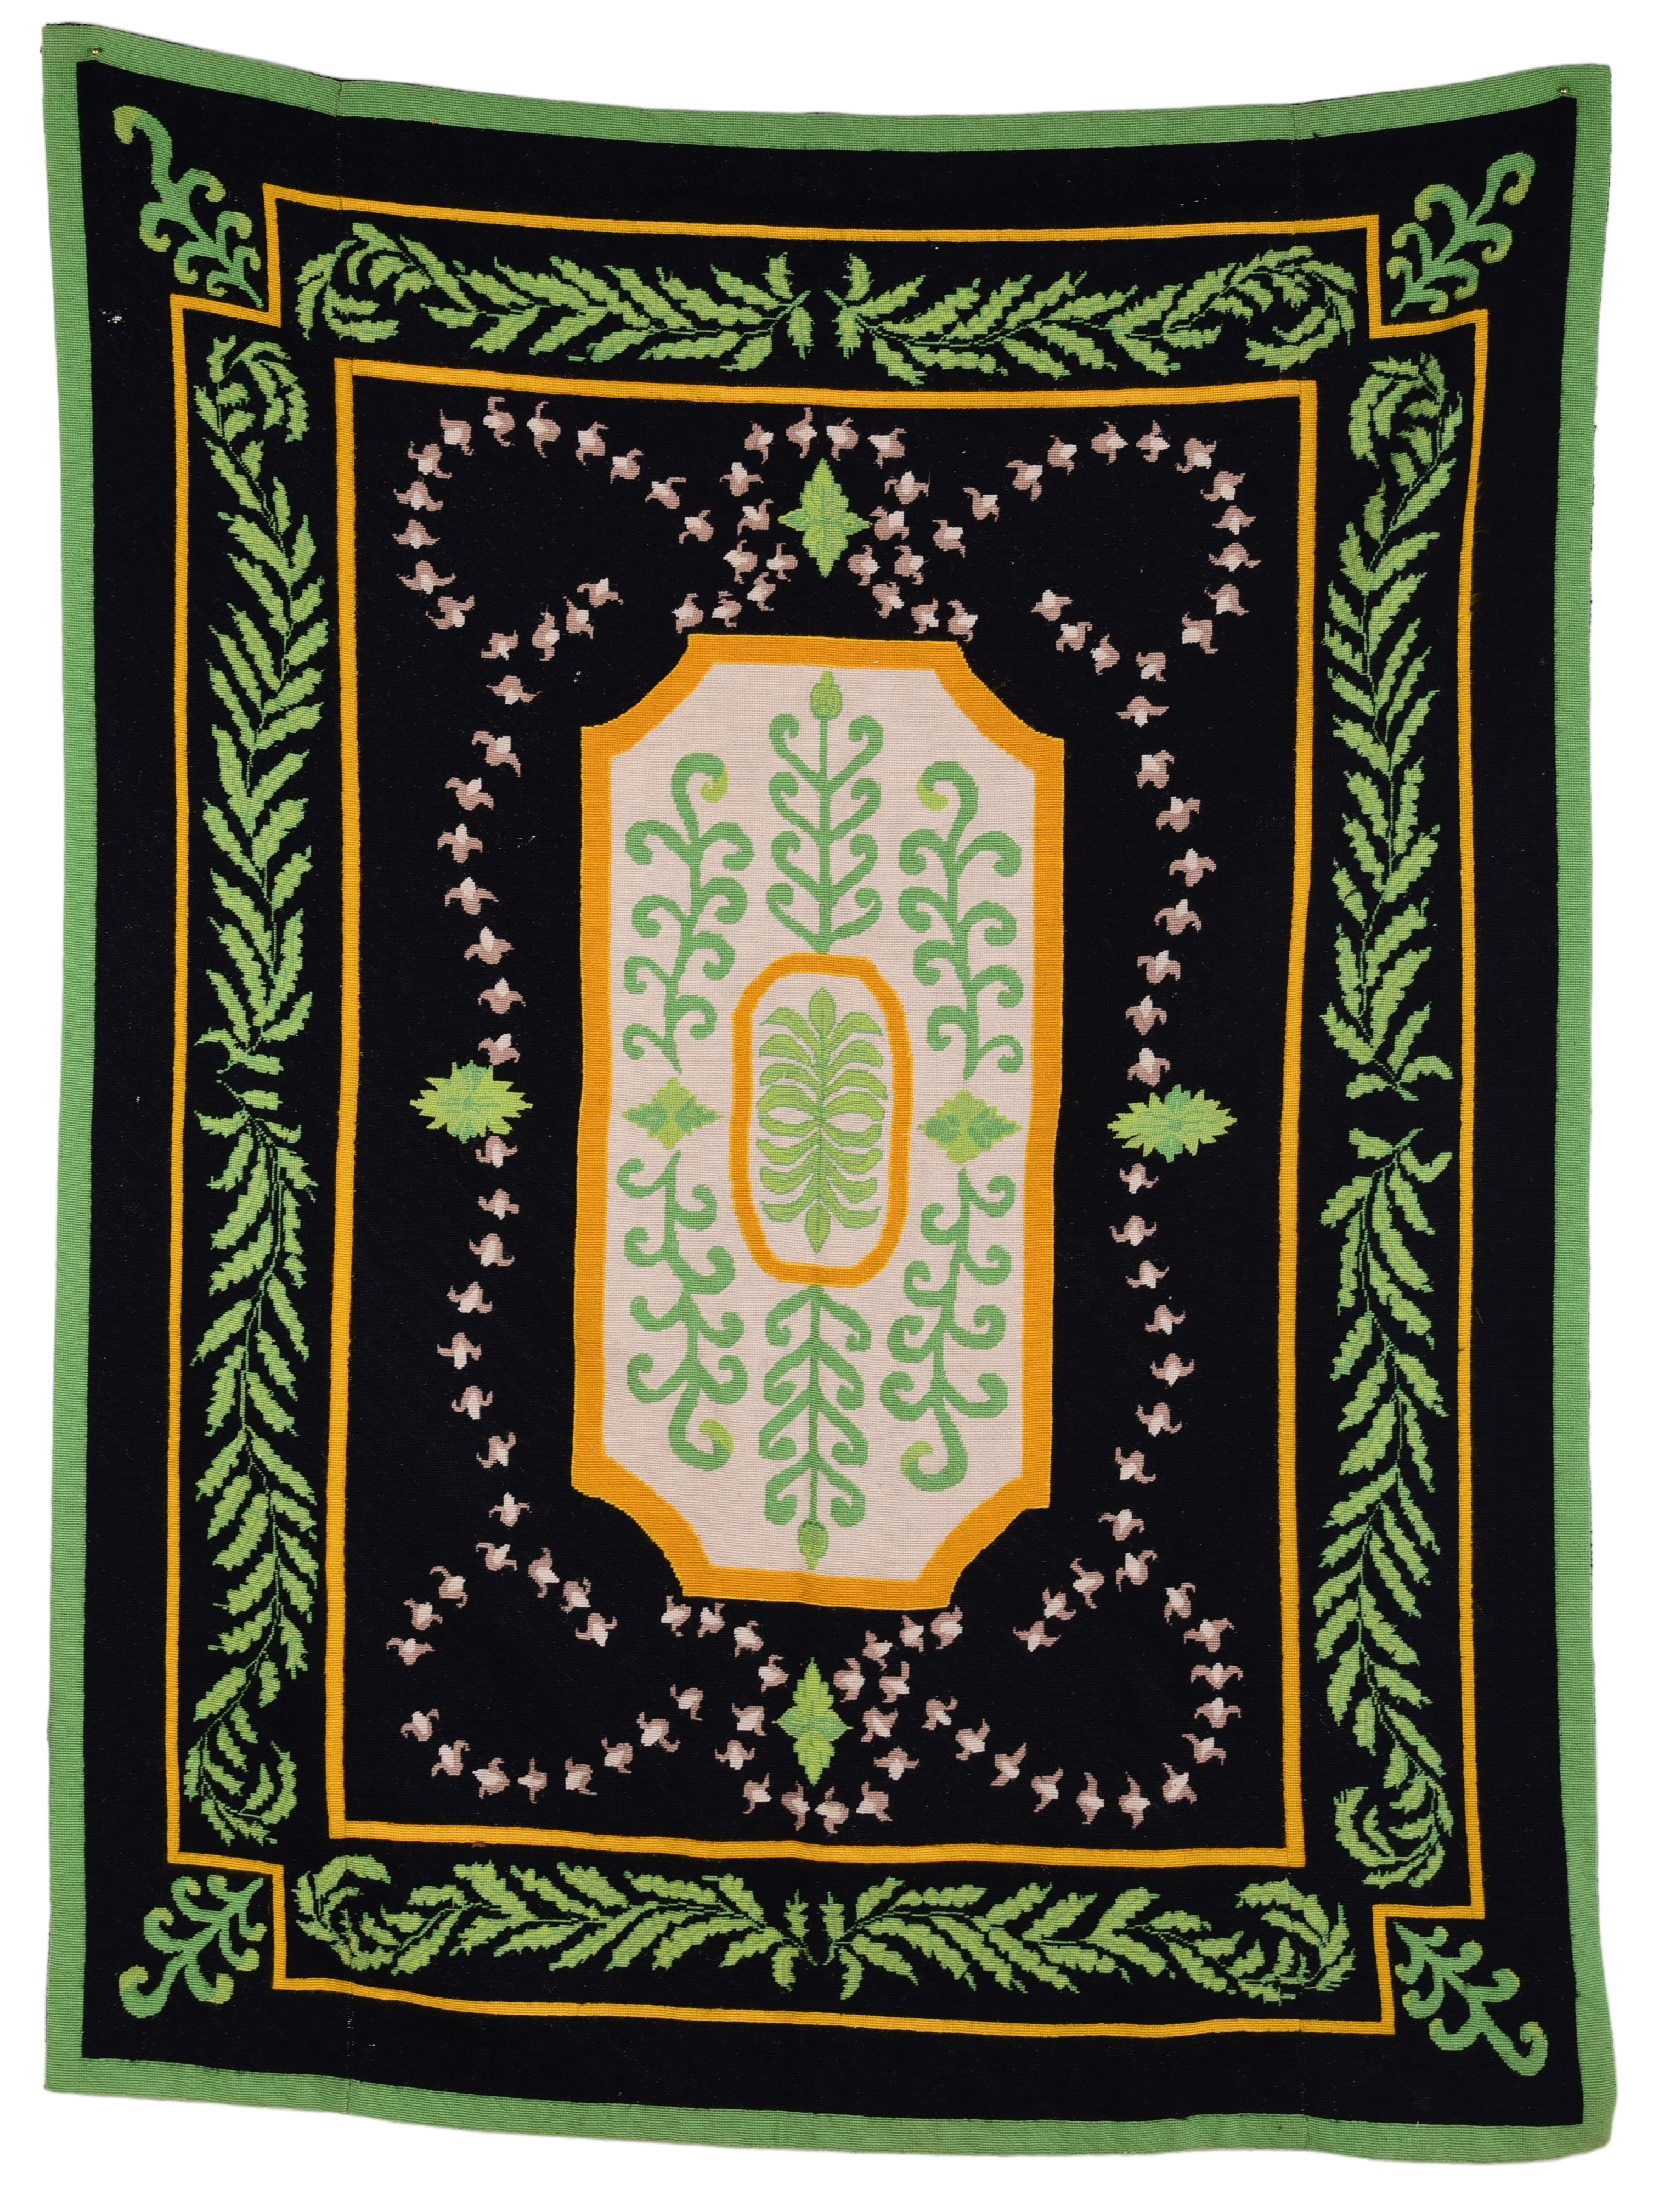 French style needlepoint rug, black